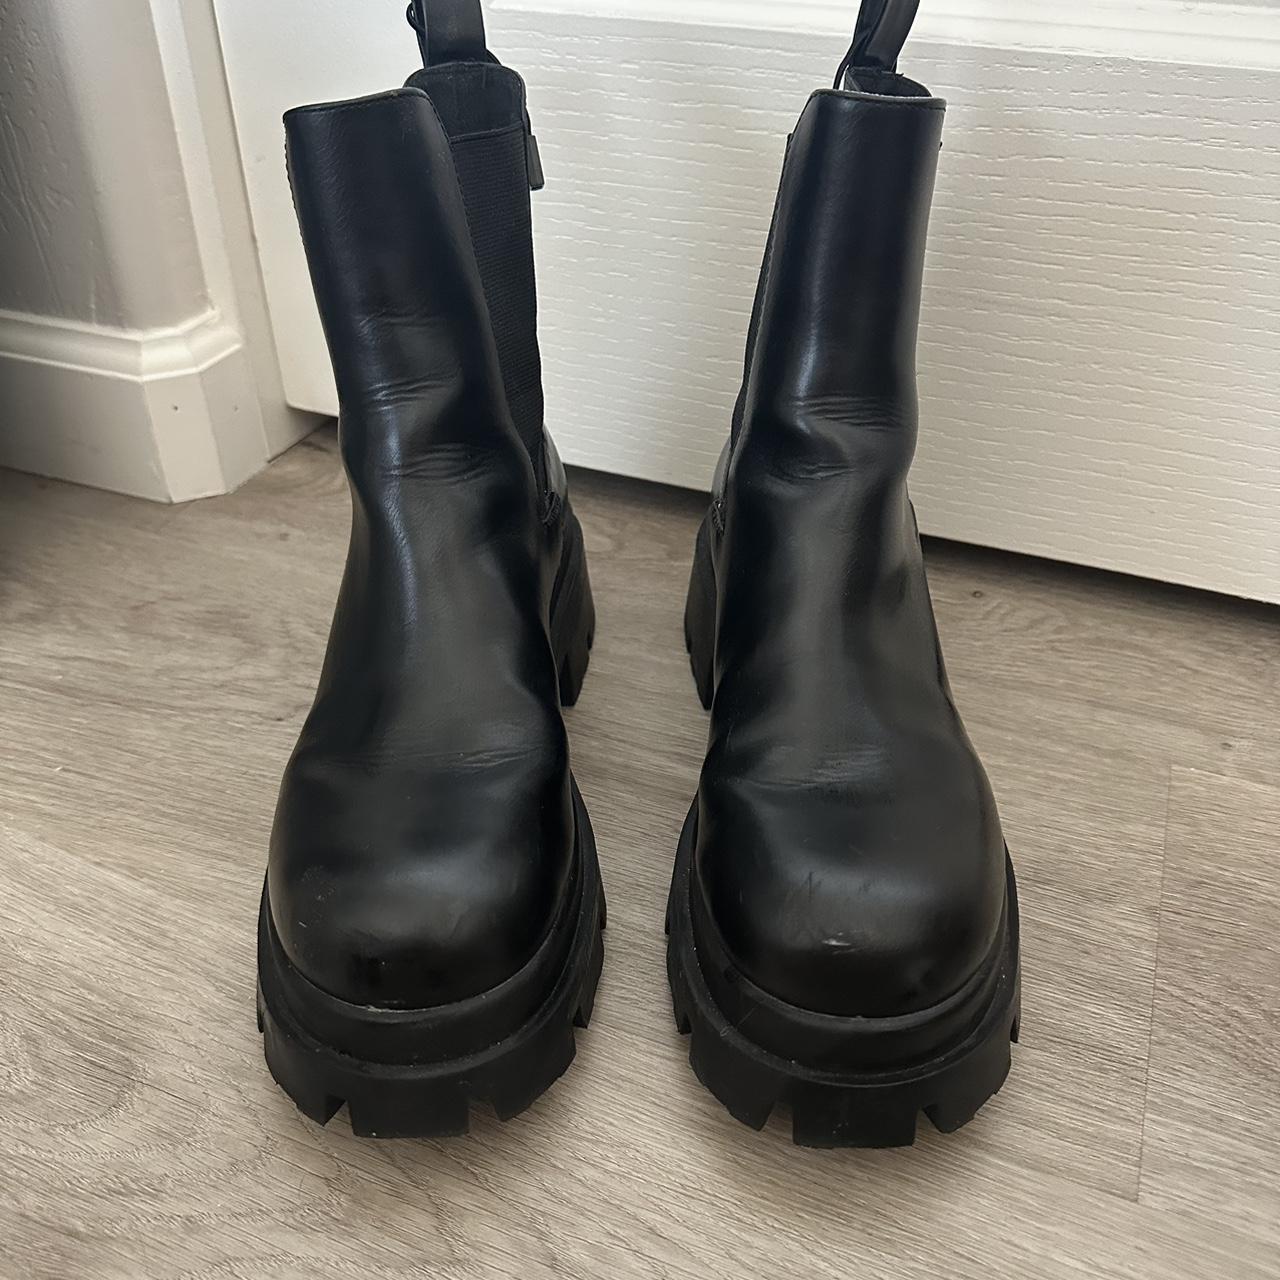 Zara platform boots - Depop